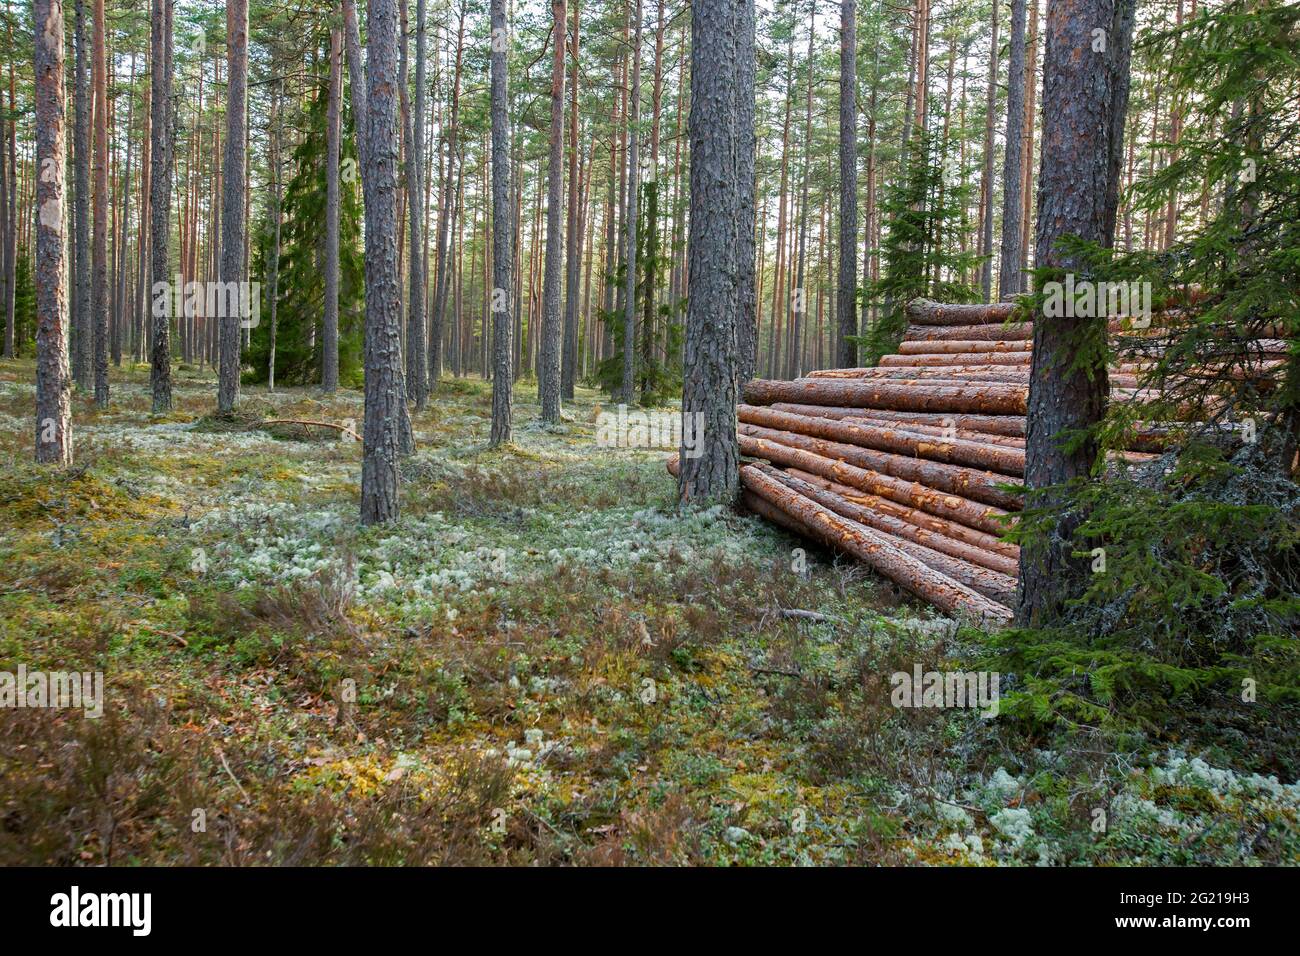 Pila di legno nella foresta. I tronchi abbattuti si accatastavano insieme in una bella pineta nella natura estone Foto Stock